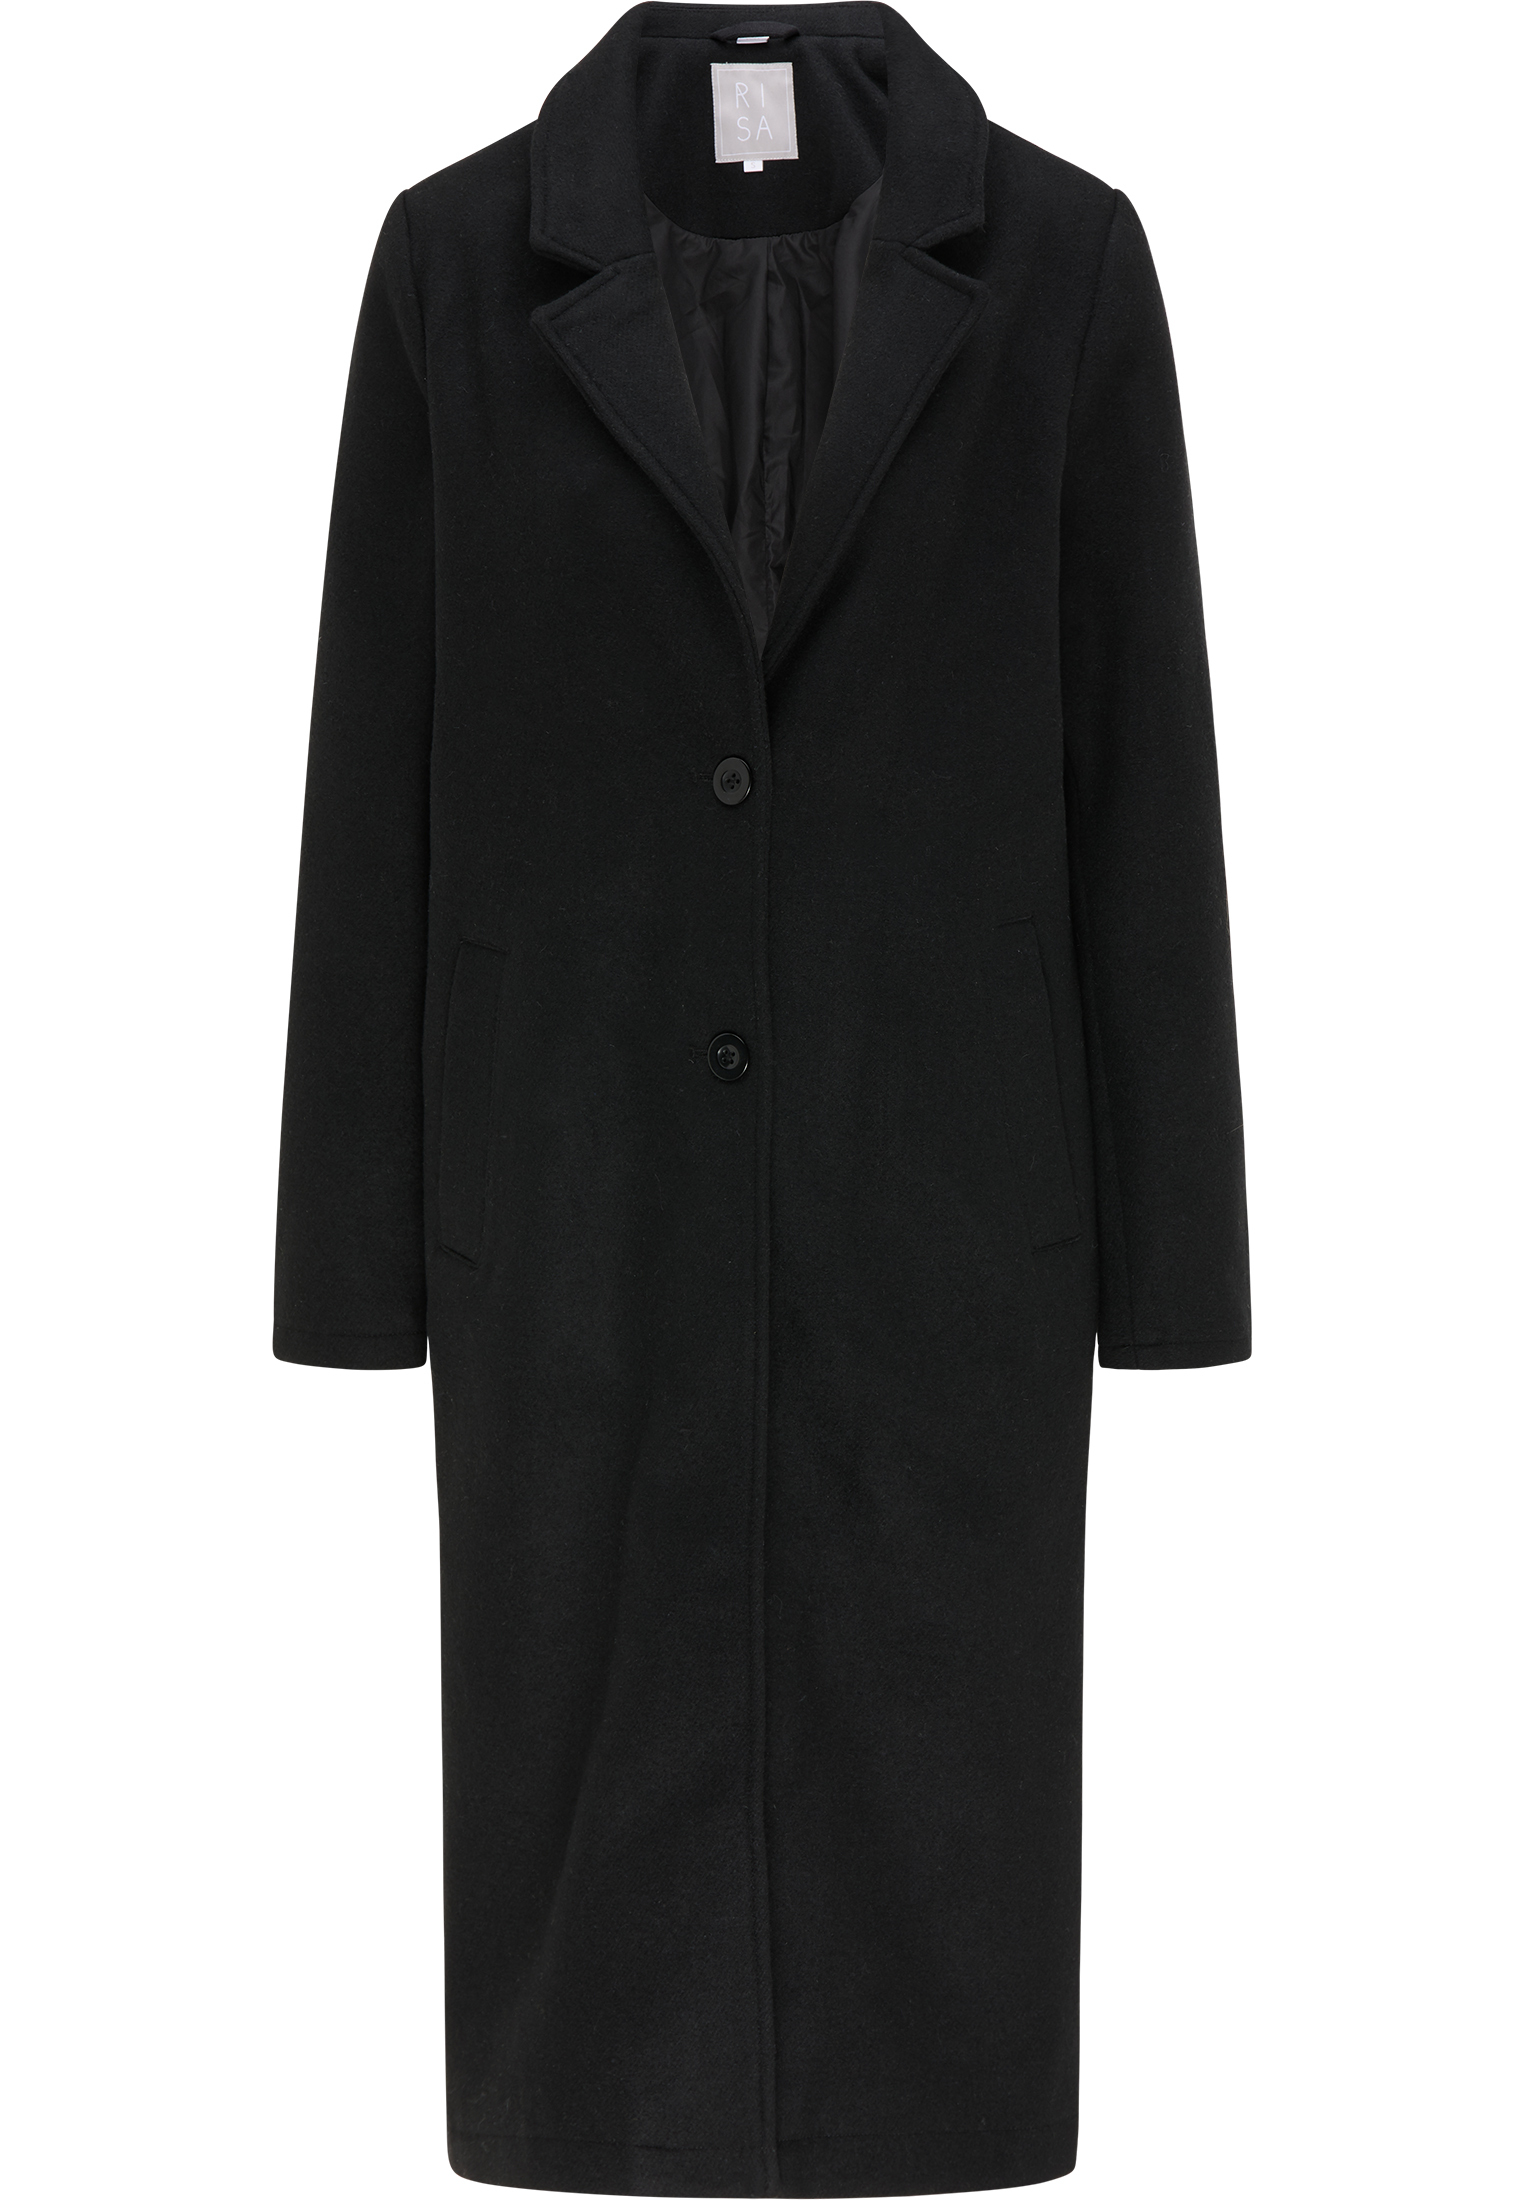 Odzież Kobiety RISA Płaszcz przejściowy w kolorze Czarnym 